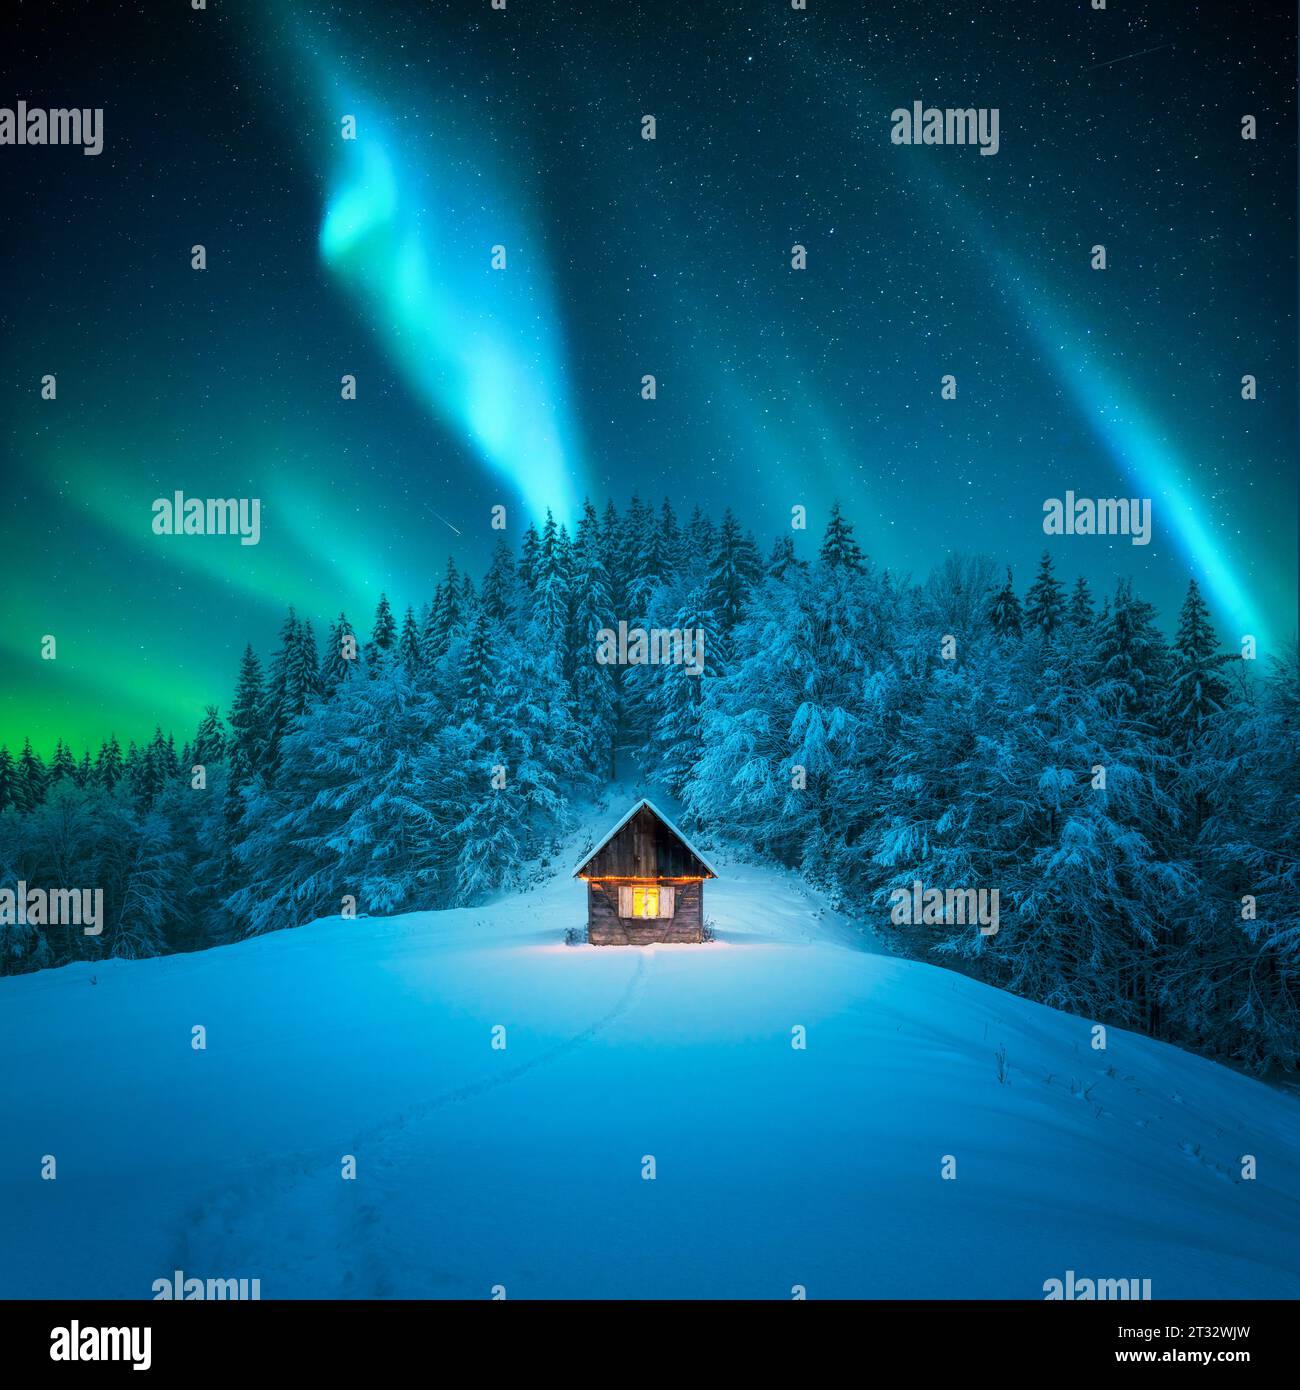 Una scena invernale con una solitaria cabina di legno e abeti innevati. Aurora boreale. Aurora boreale nella foresta invernale. Concetto di vacanze natalizie e vacanze invernali Foto Stock